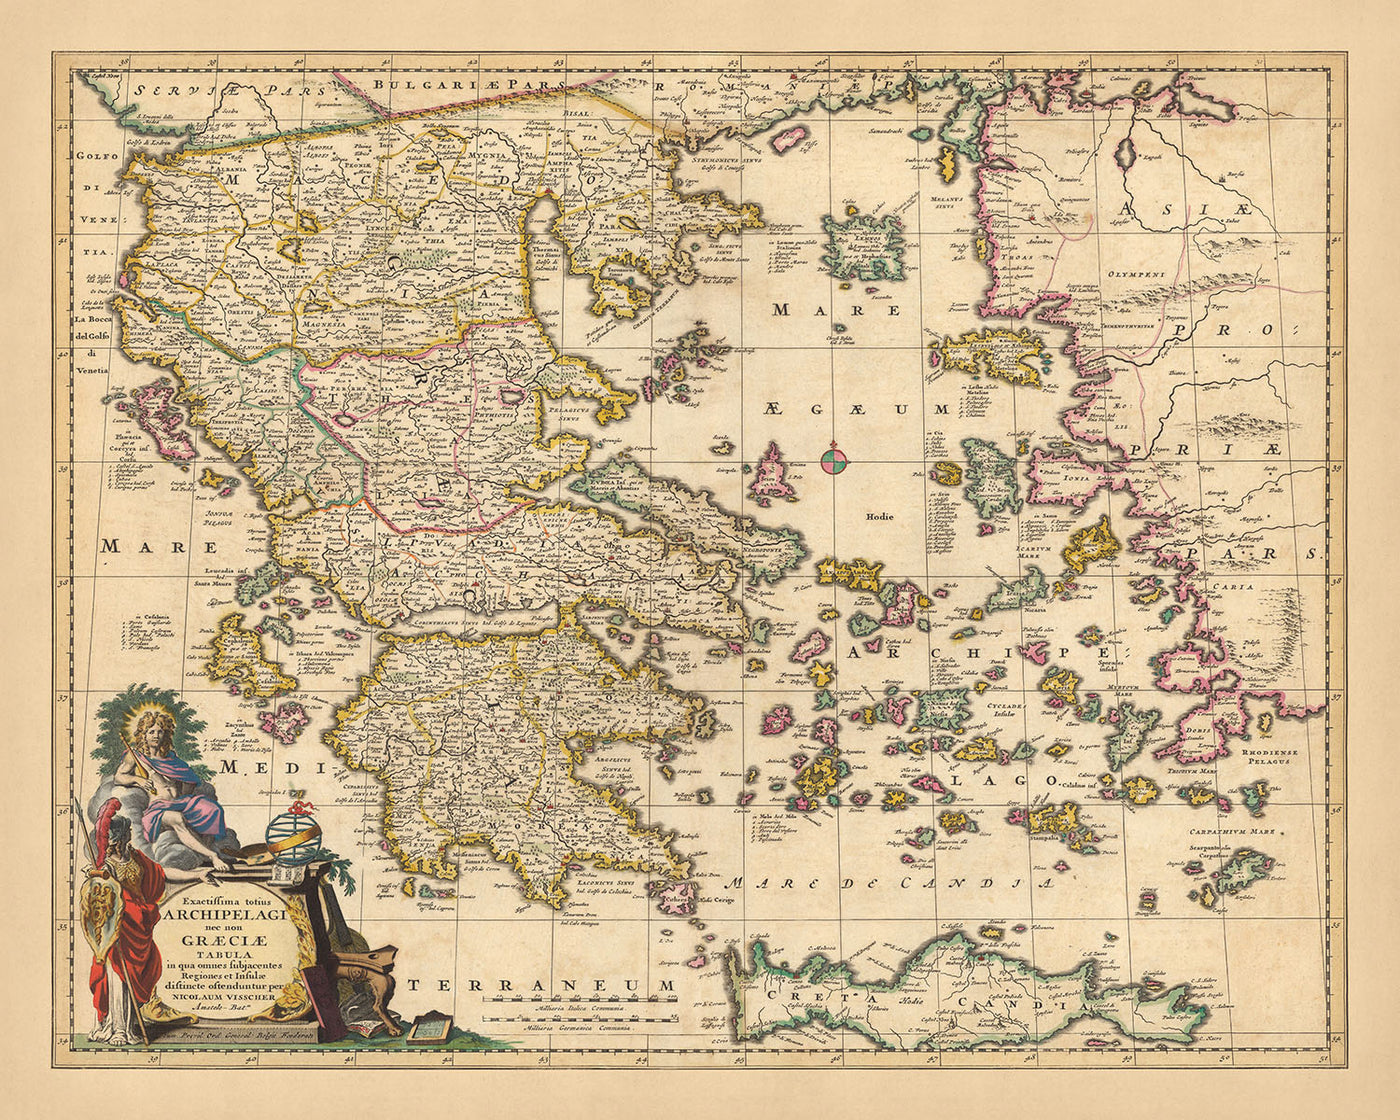 Mapa antiguo de Grecia, Turquía y el Egeo por Visscher, 1690: Atenas, Creta, Islas Sarónicas, Cícladas, Dodecaneso